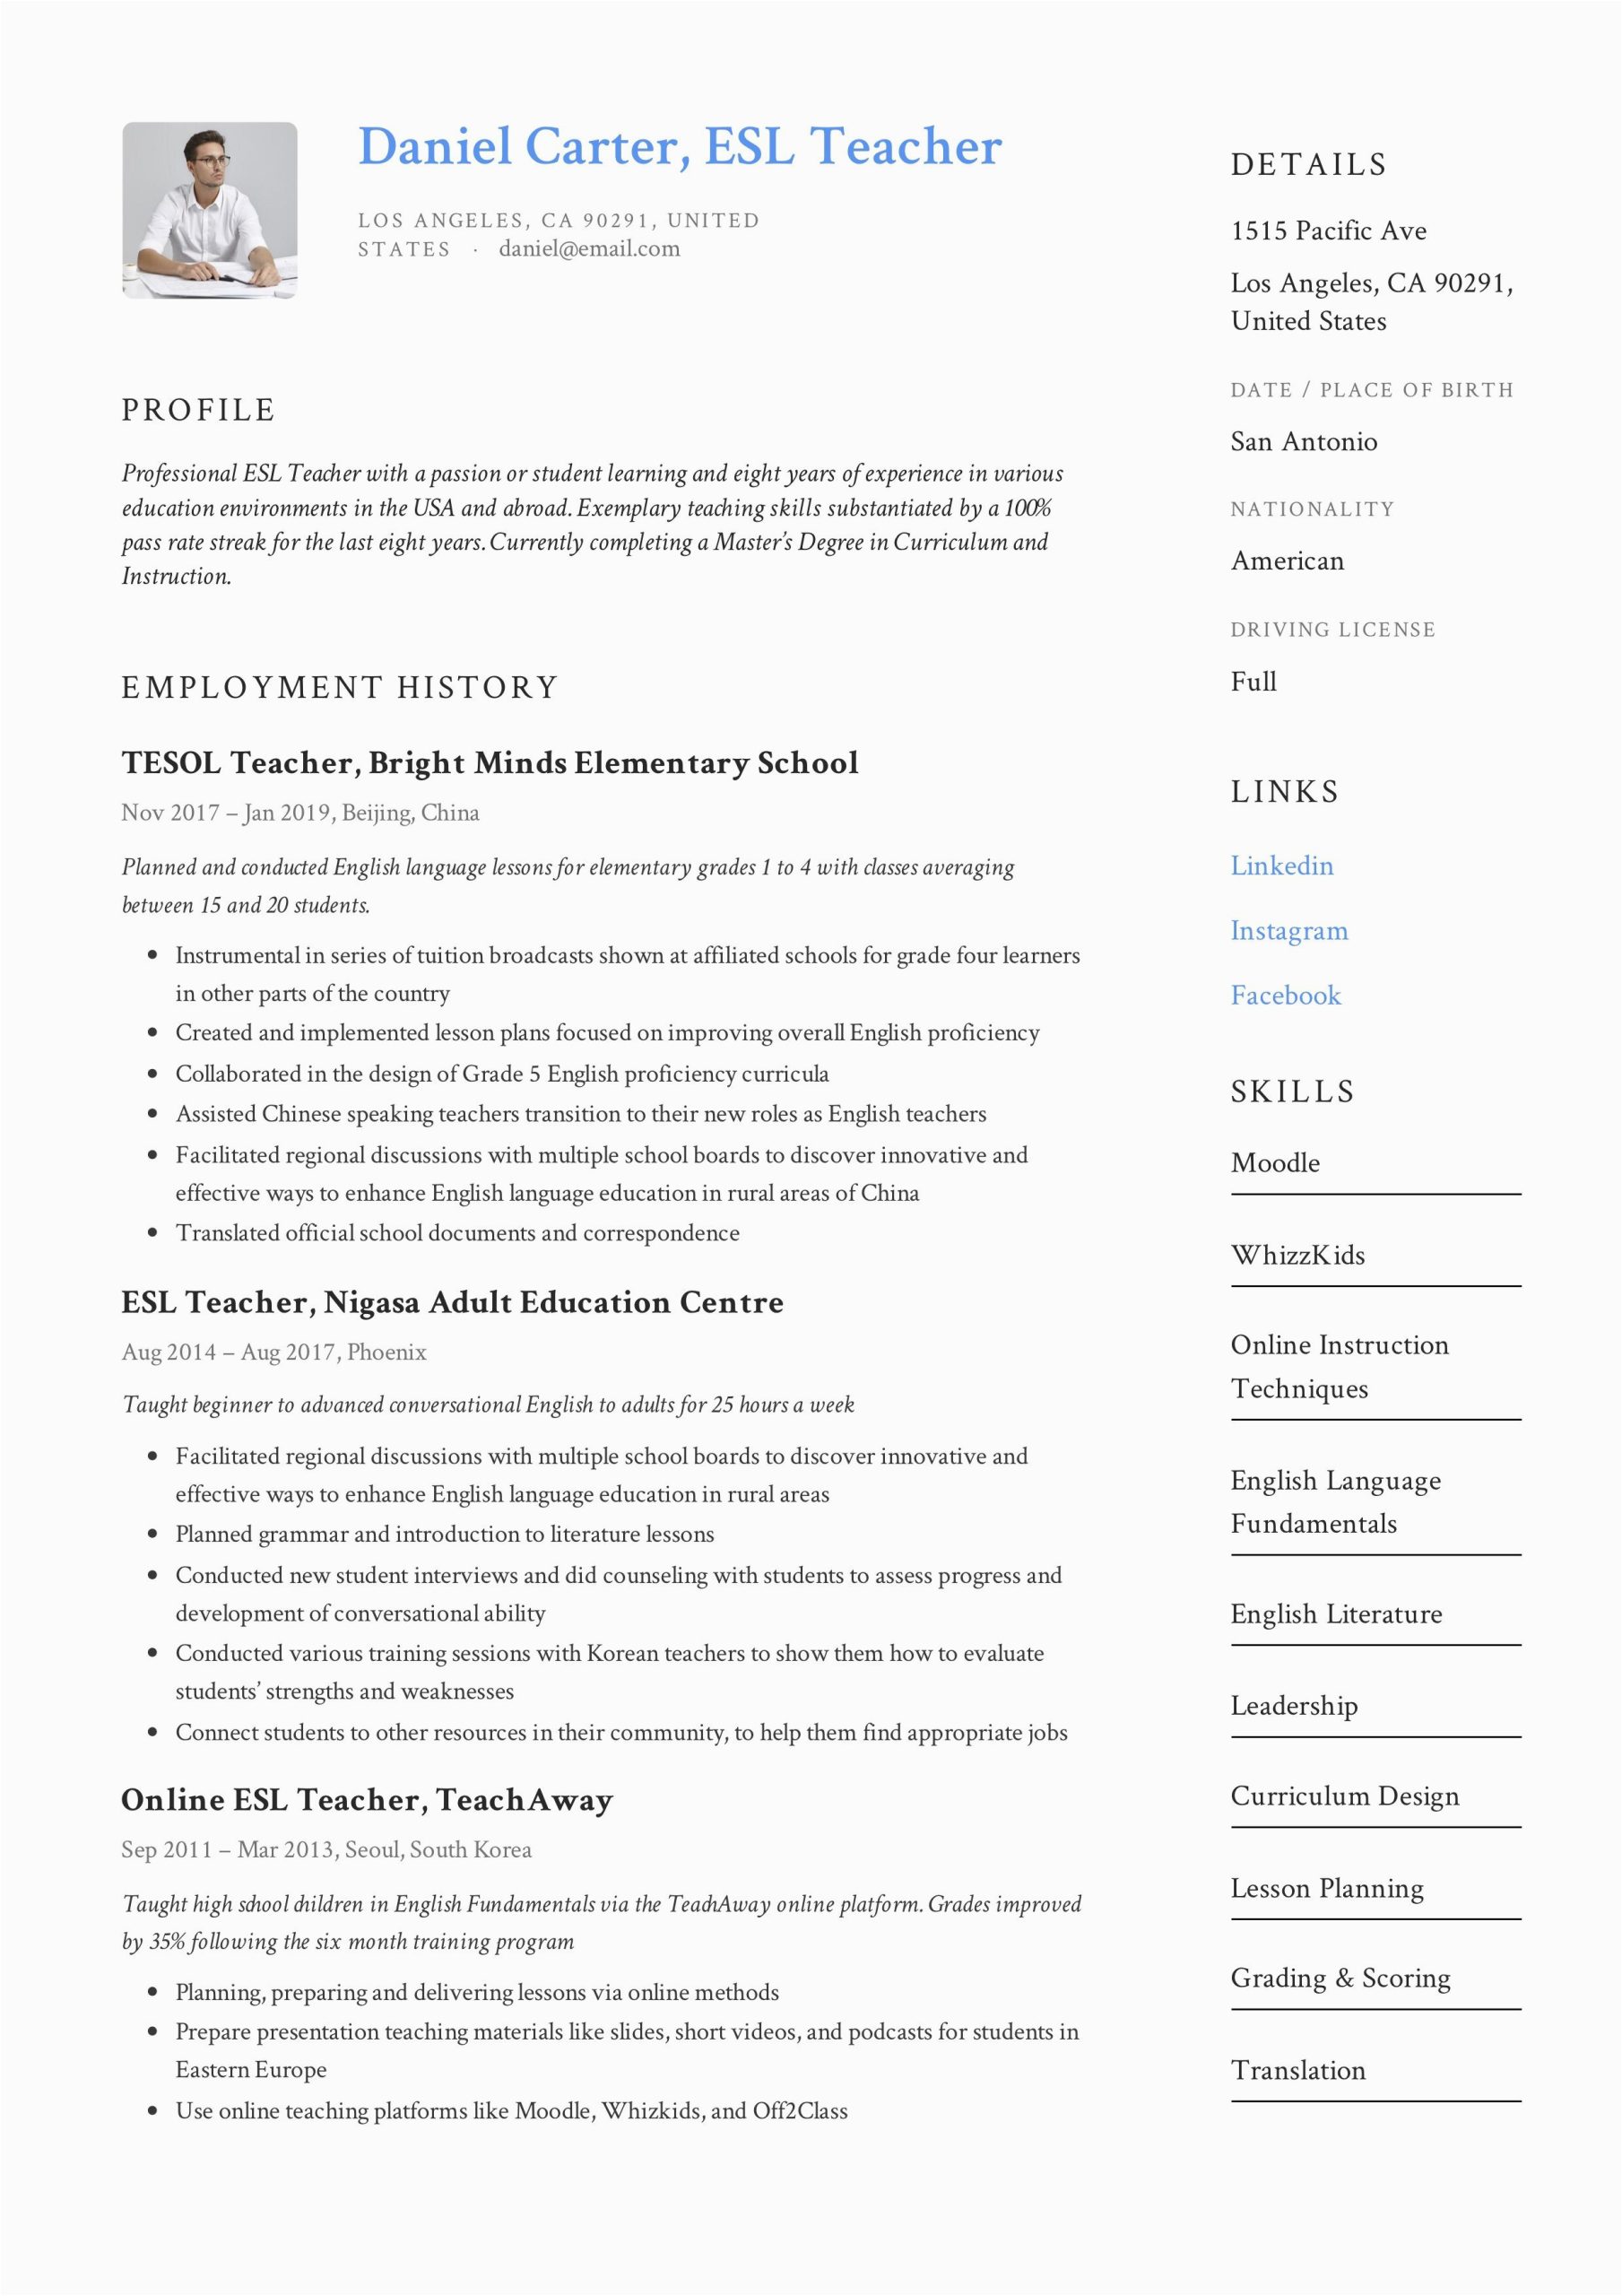 Sample Resume for Online Esl Teacher Esl Teacher Resume Example